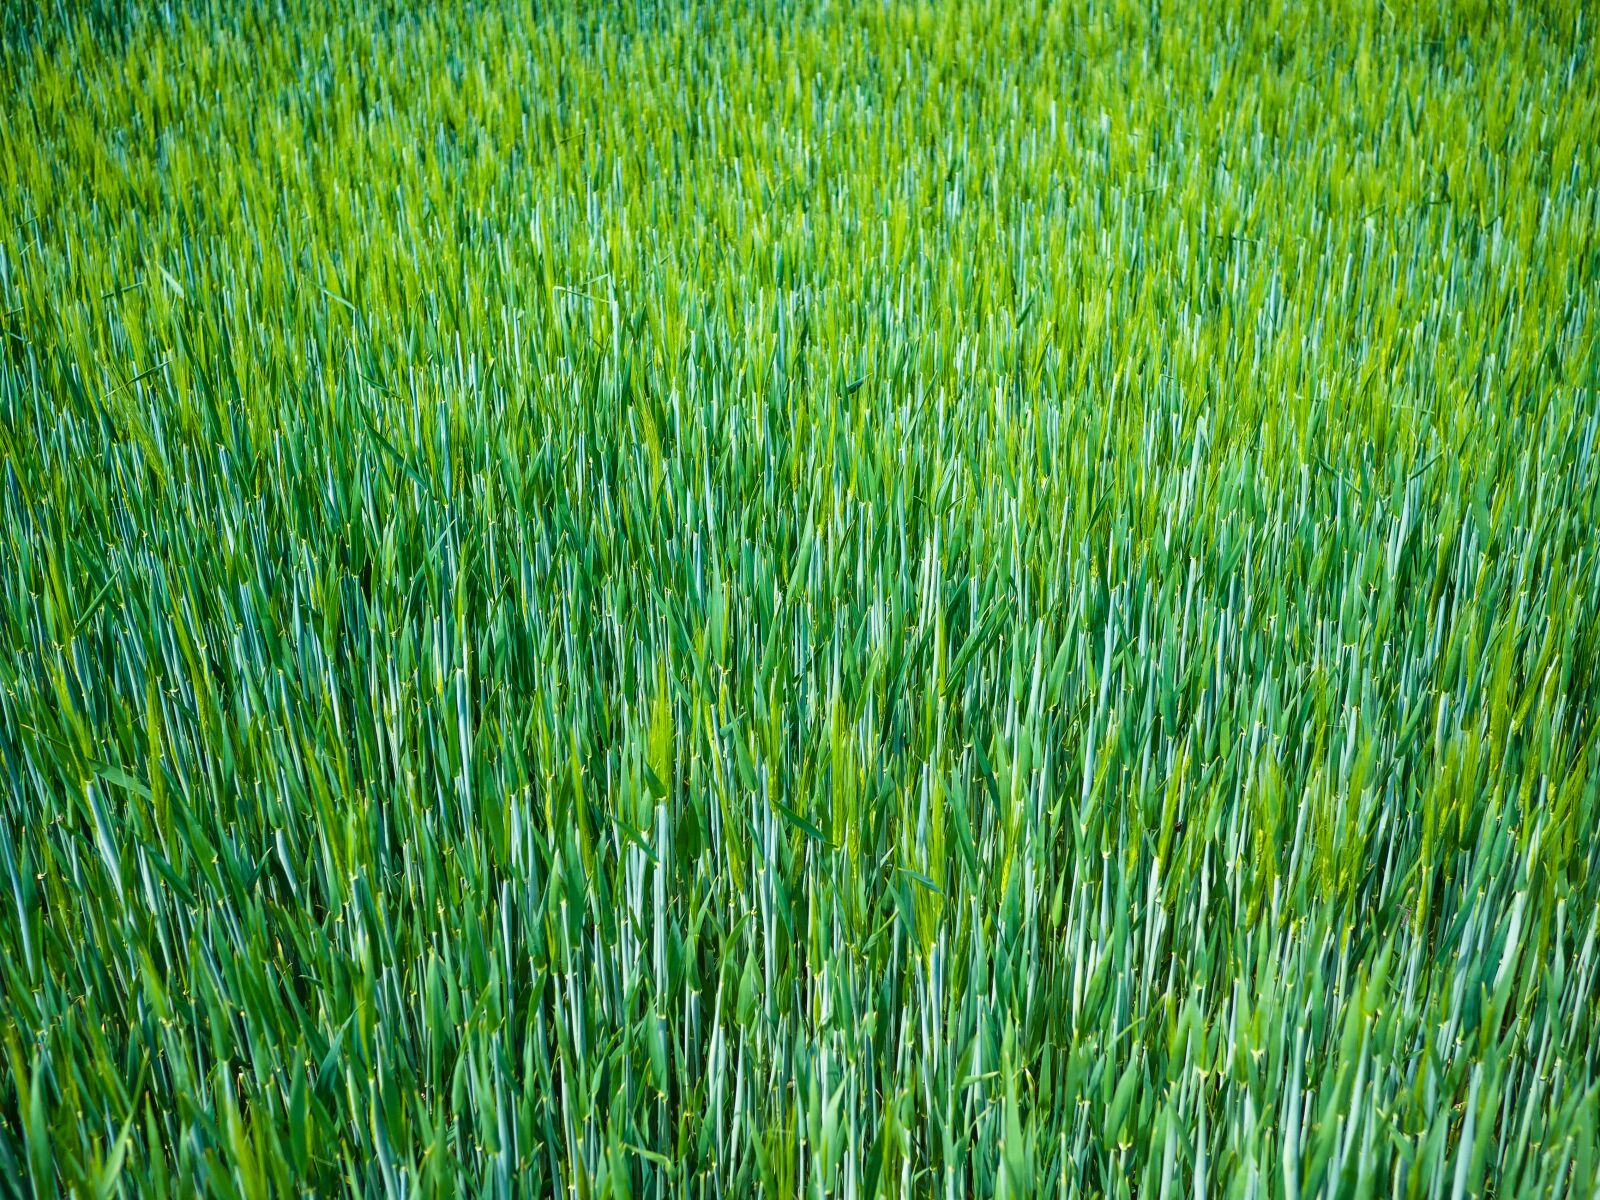 Panasonic Lumix G 20mm F1.7 ASPH sample photo. Barley, barley field, young photography